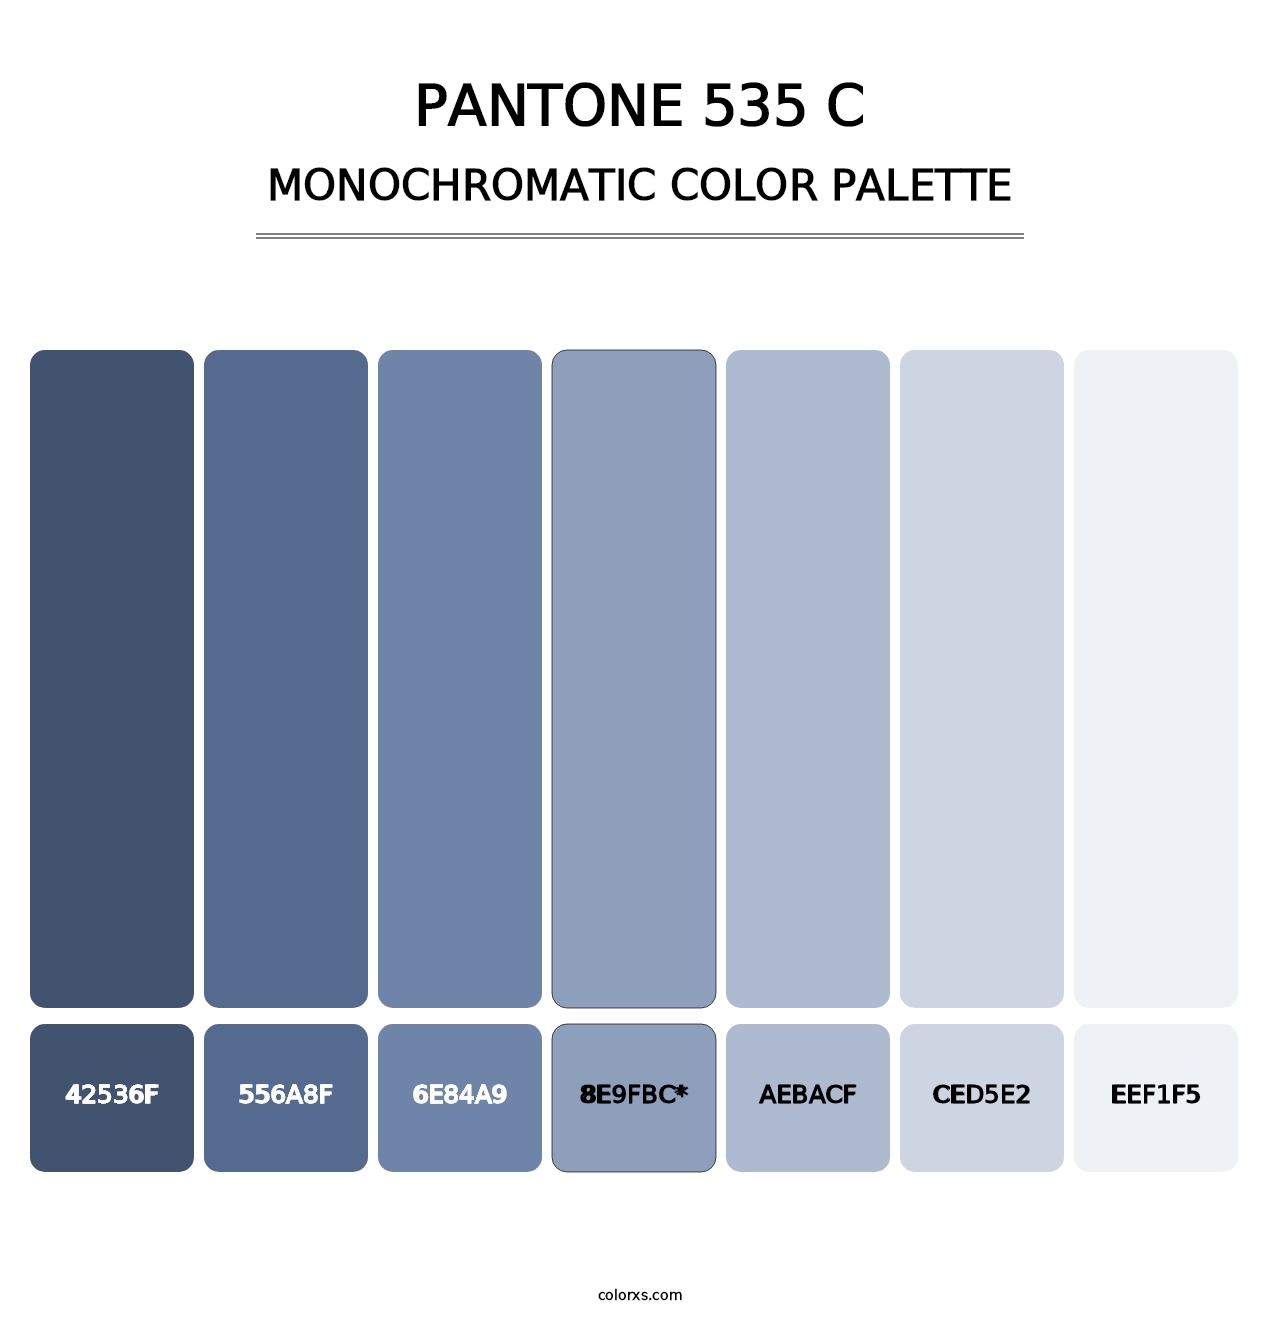 PANTONE 535 C - Monochromatic Color Palette